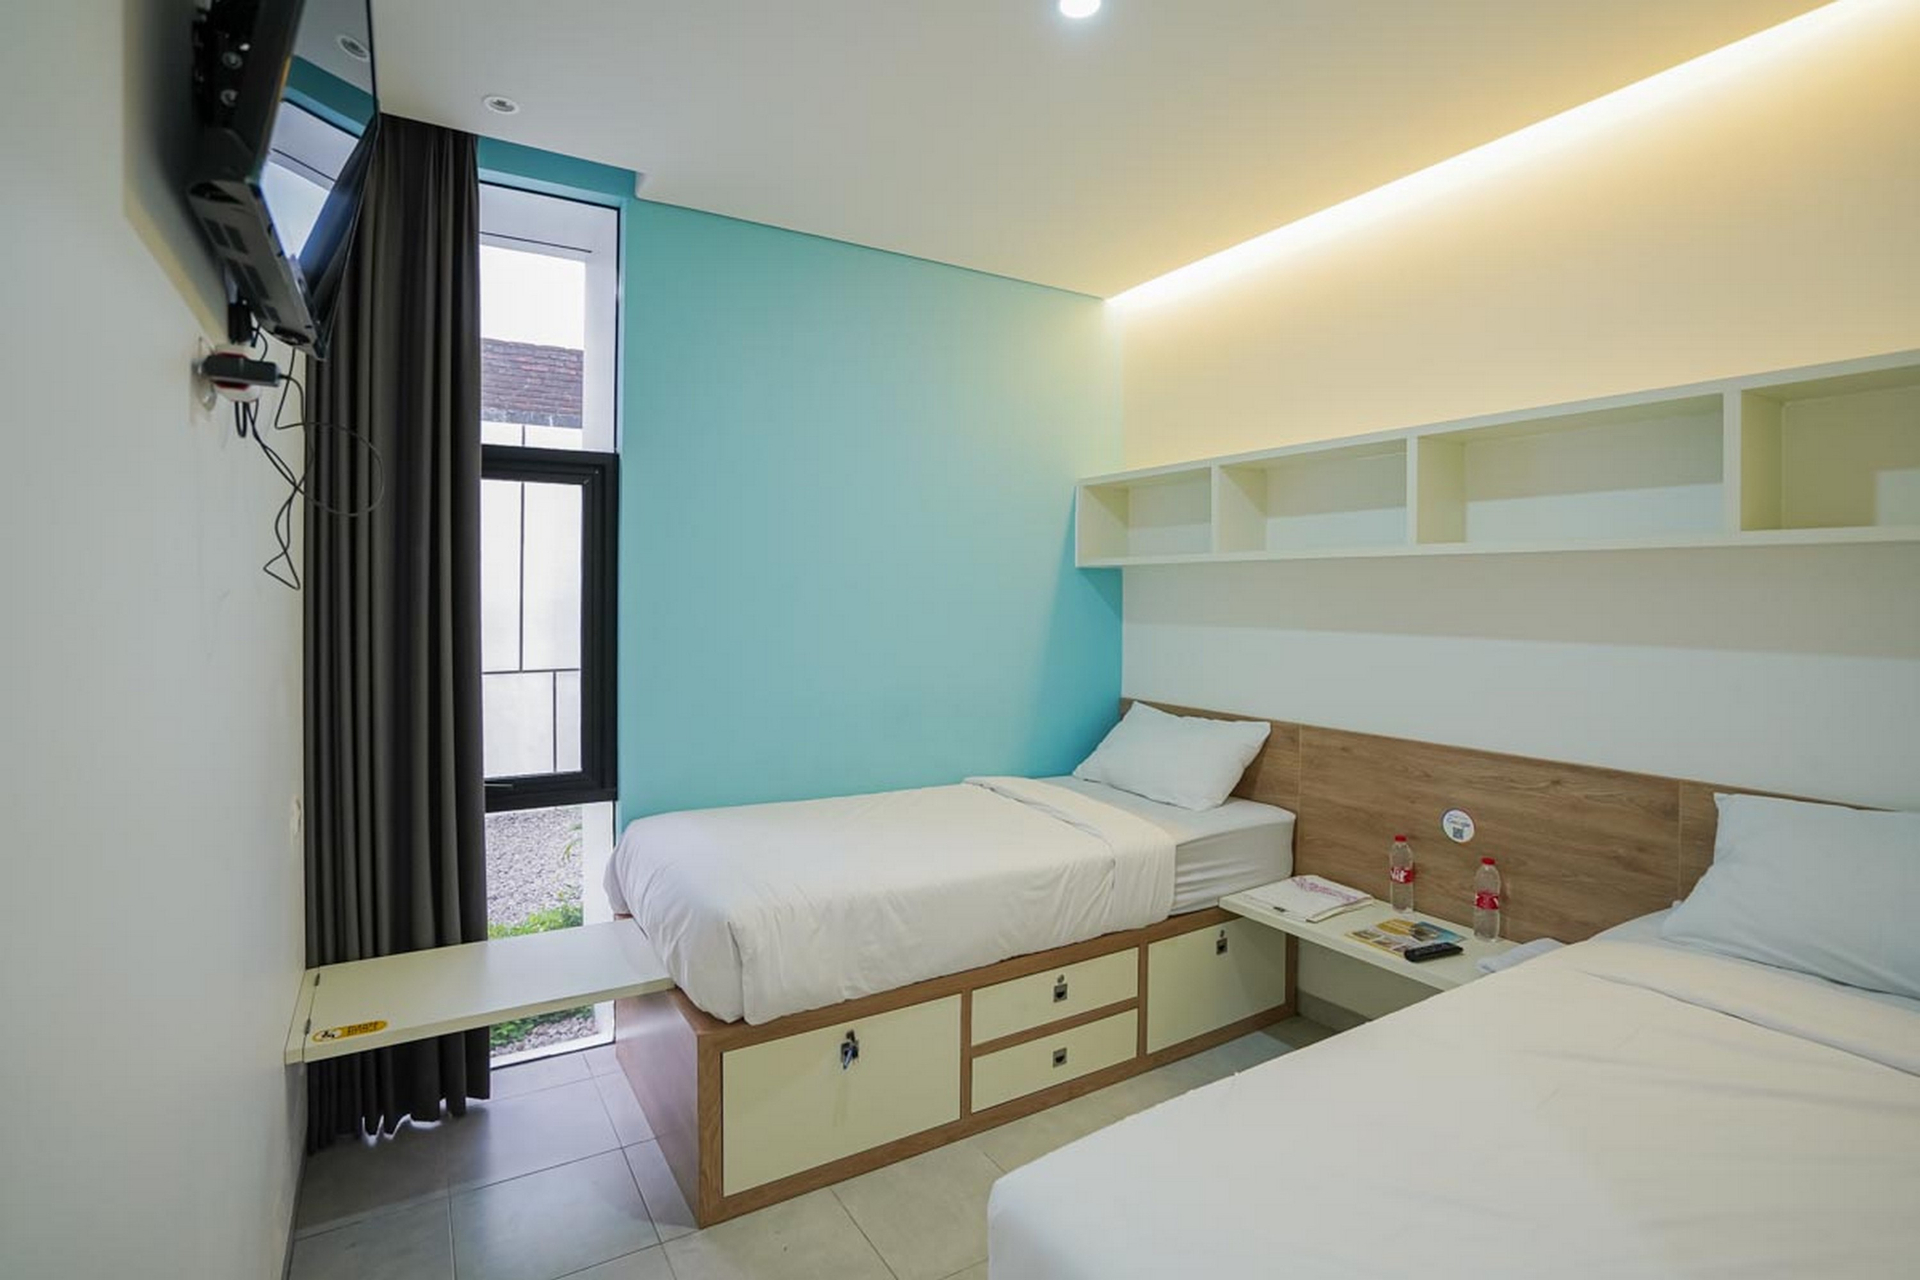 Bedroom 4, OFO Kost Premium Kampung Inggris Pare Syariah RedPartner, Kediri